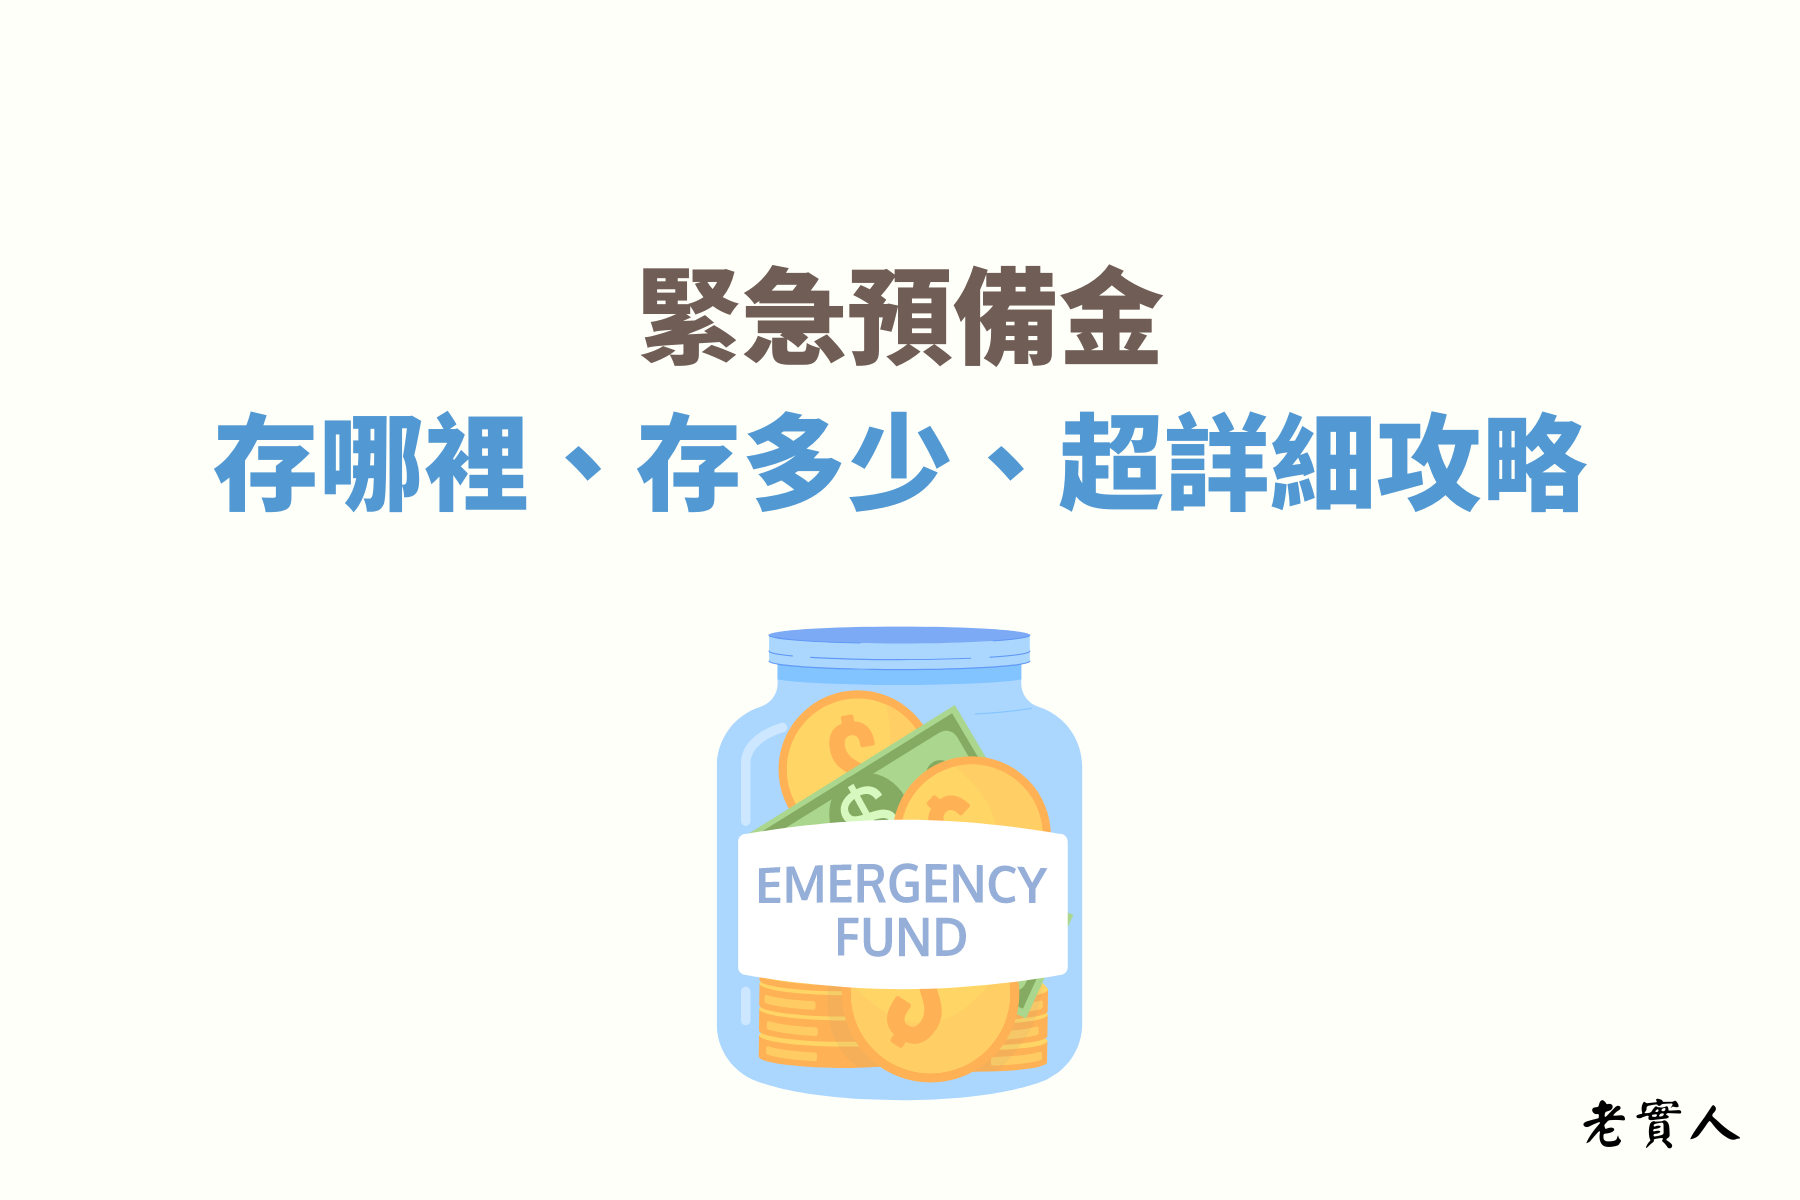 緊急預備金 ( emergency-fund ) 是一個可以讓您在累積資產的途中，帶給你安心並且可以有效保護資產的一筆錢，緊急預備金該存多少，可以存在哪些地方，存50萬夠嗎，以下文章分享給您。